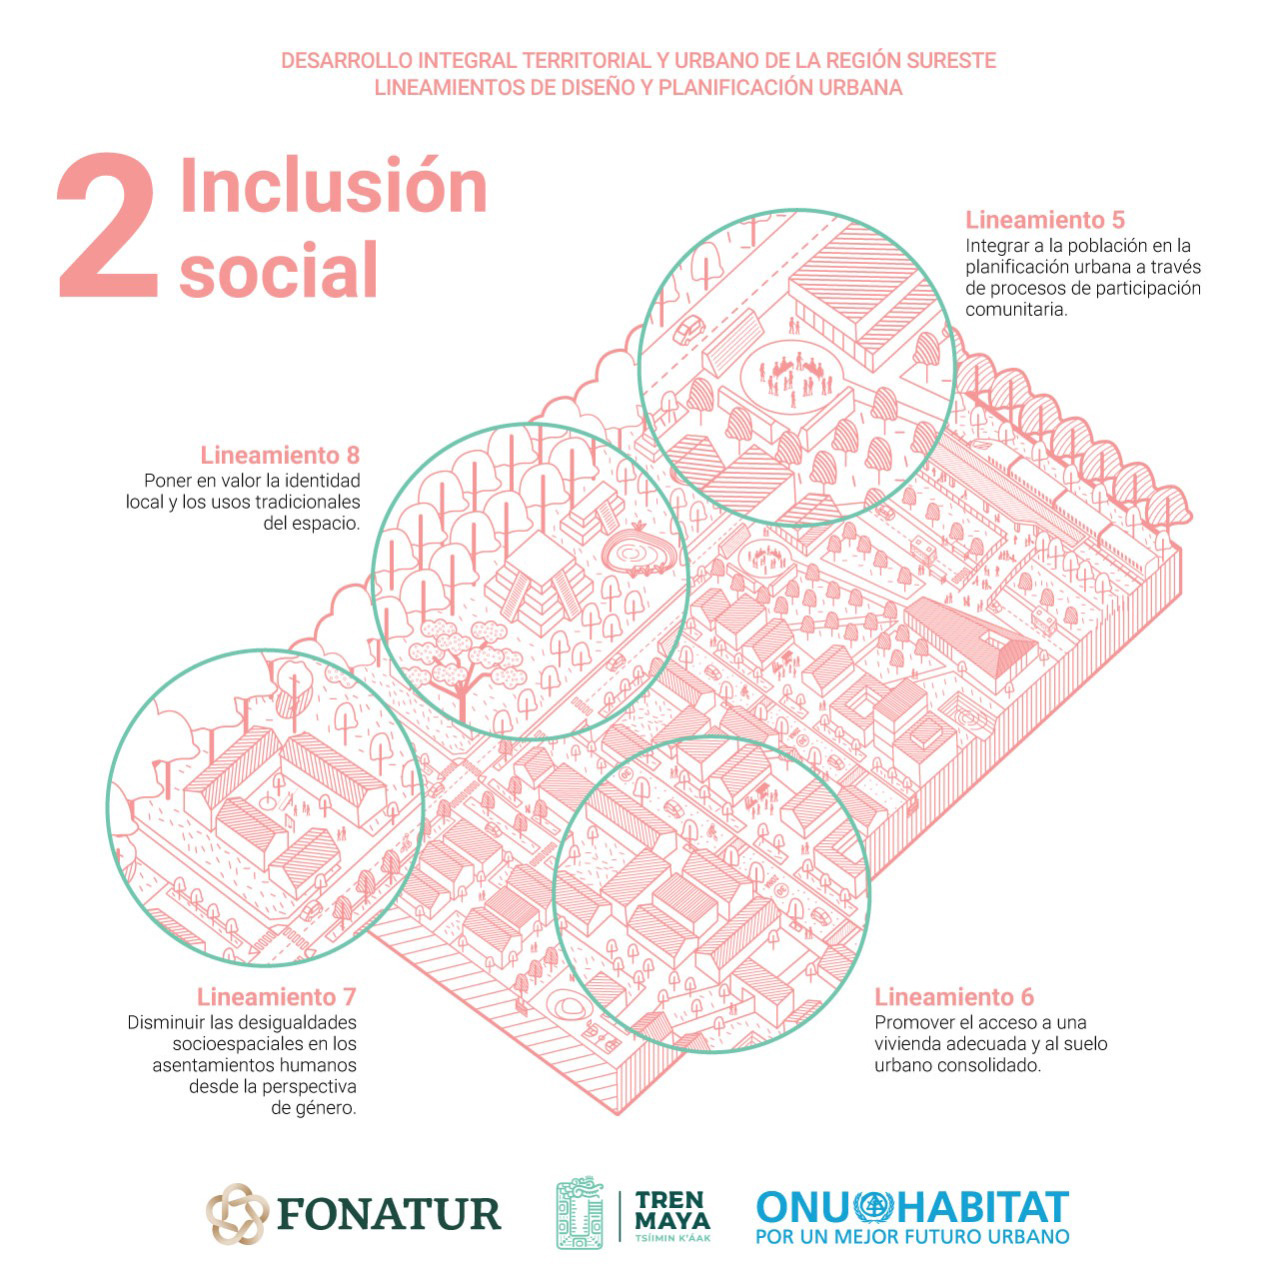 Propone ONU-Habitat lineamientos de diseño urbano para el sureste - 02 inclusion social